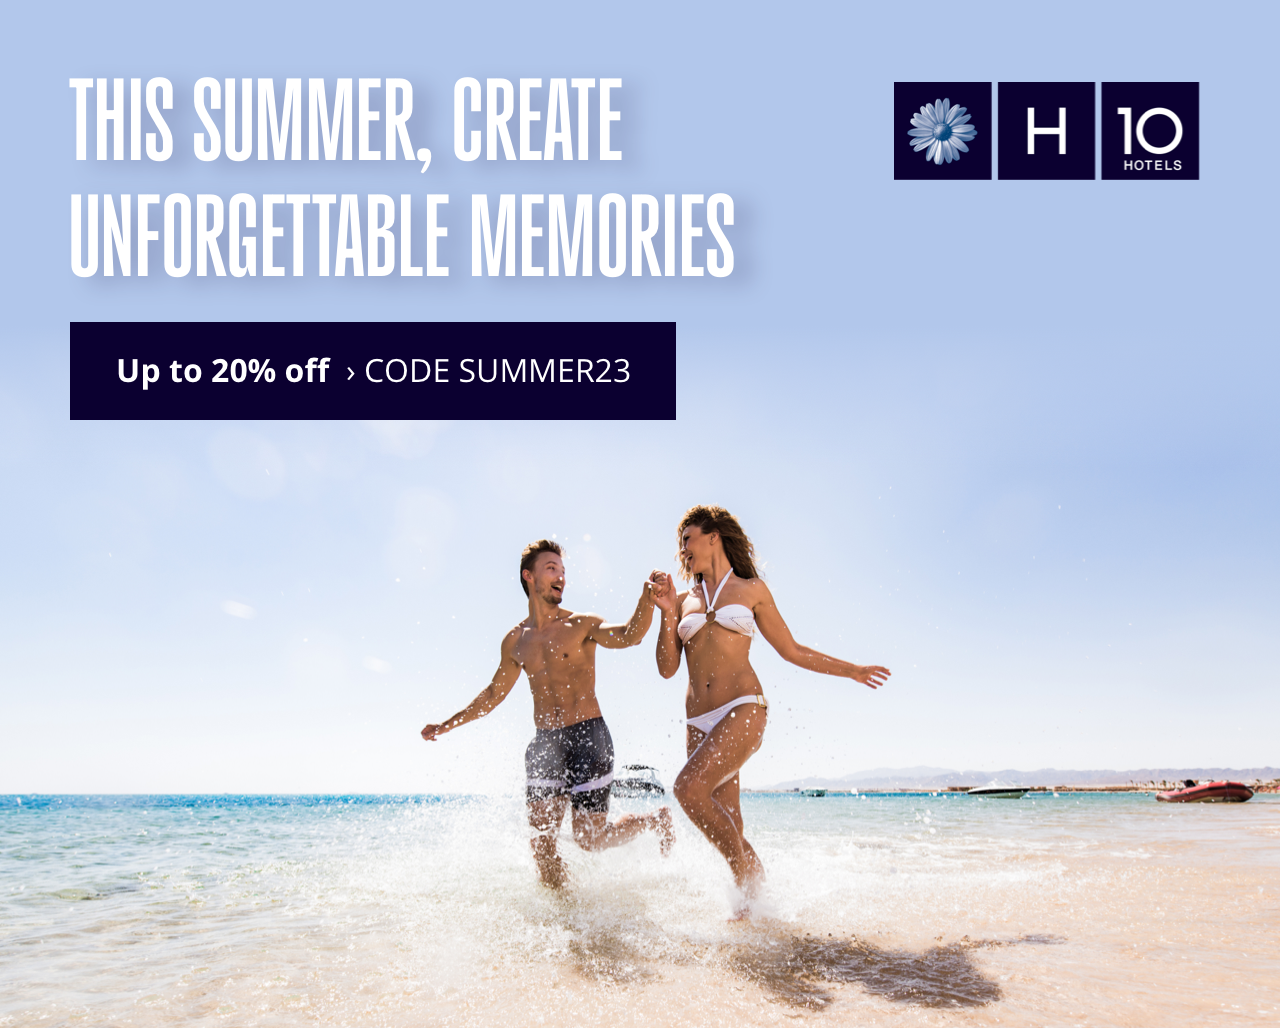 This summer, create unforgettable memories